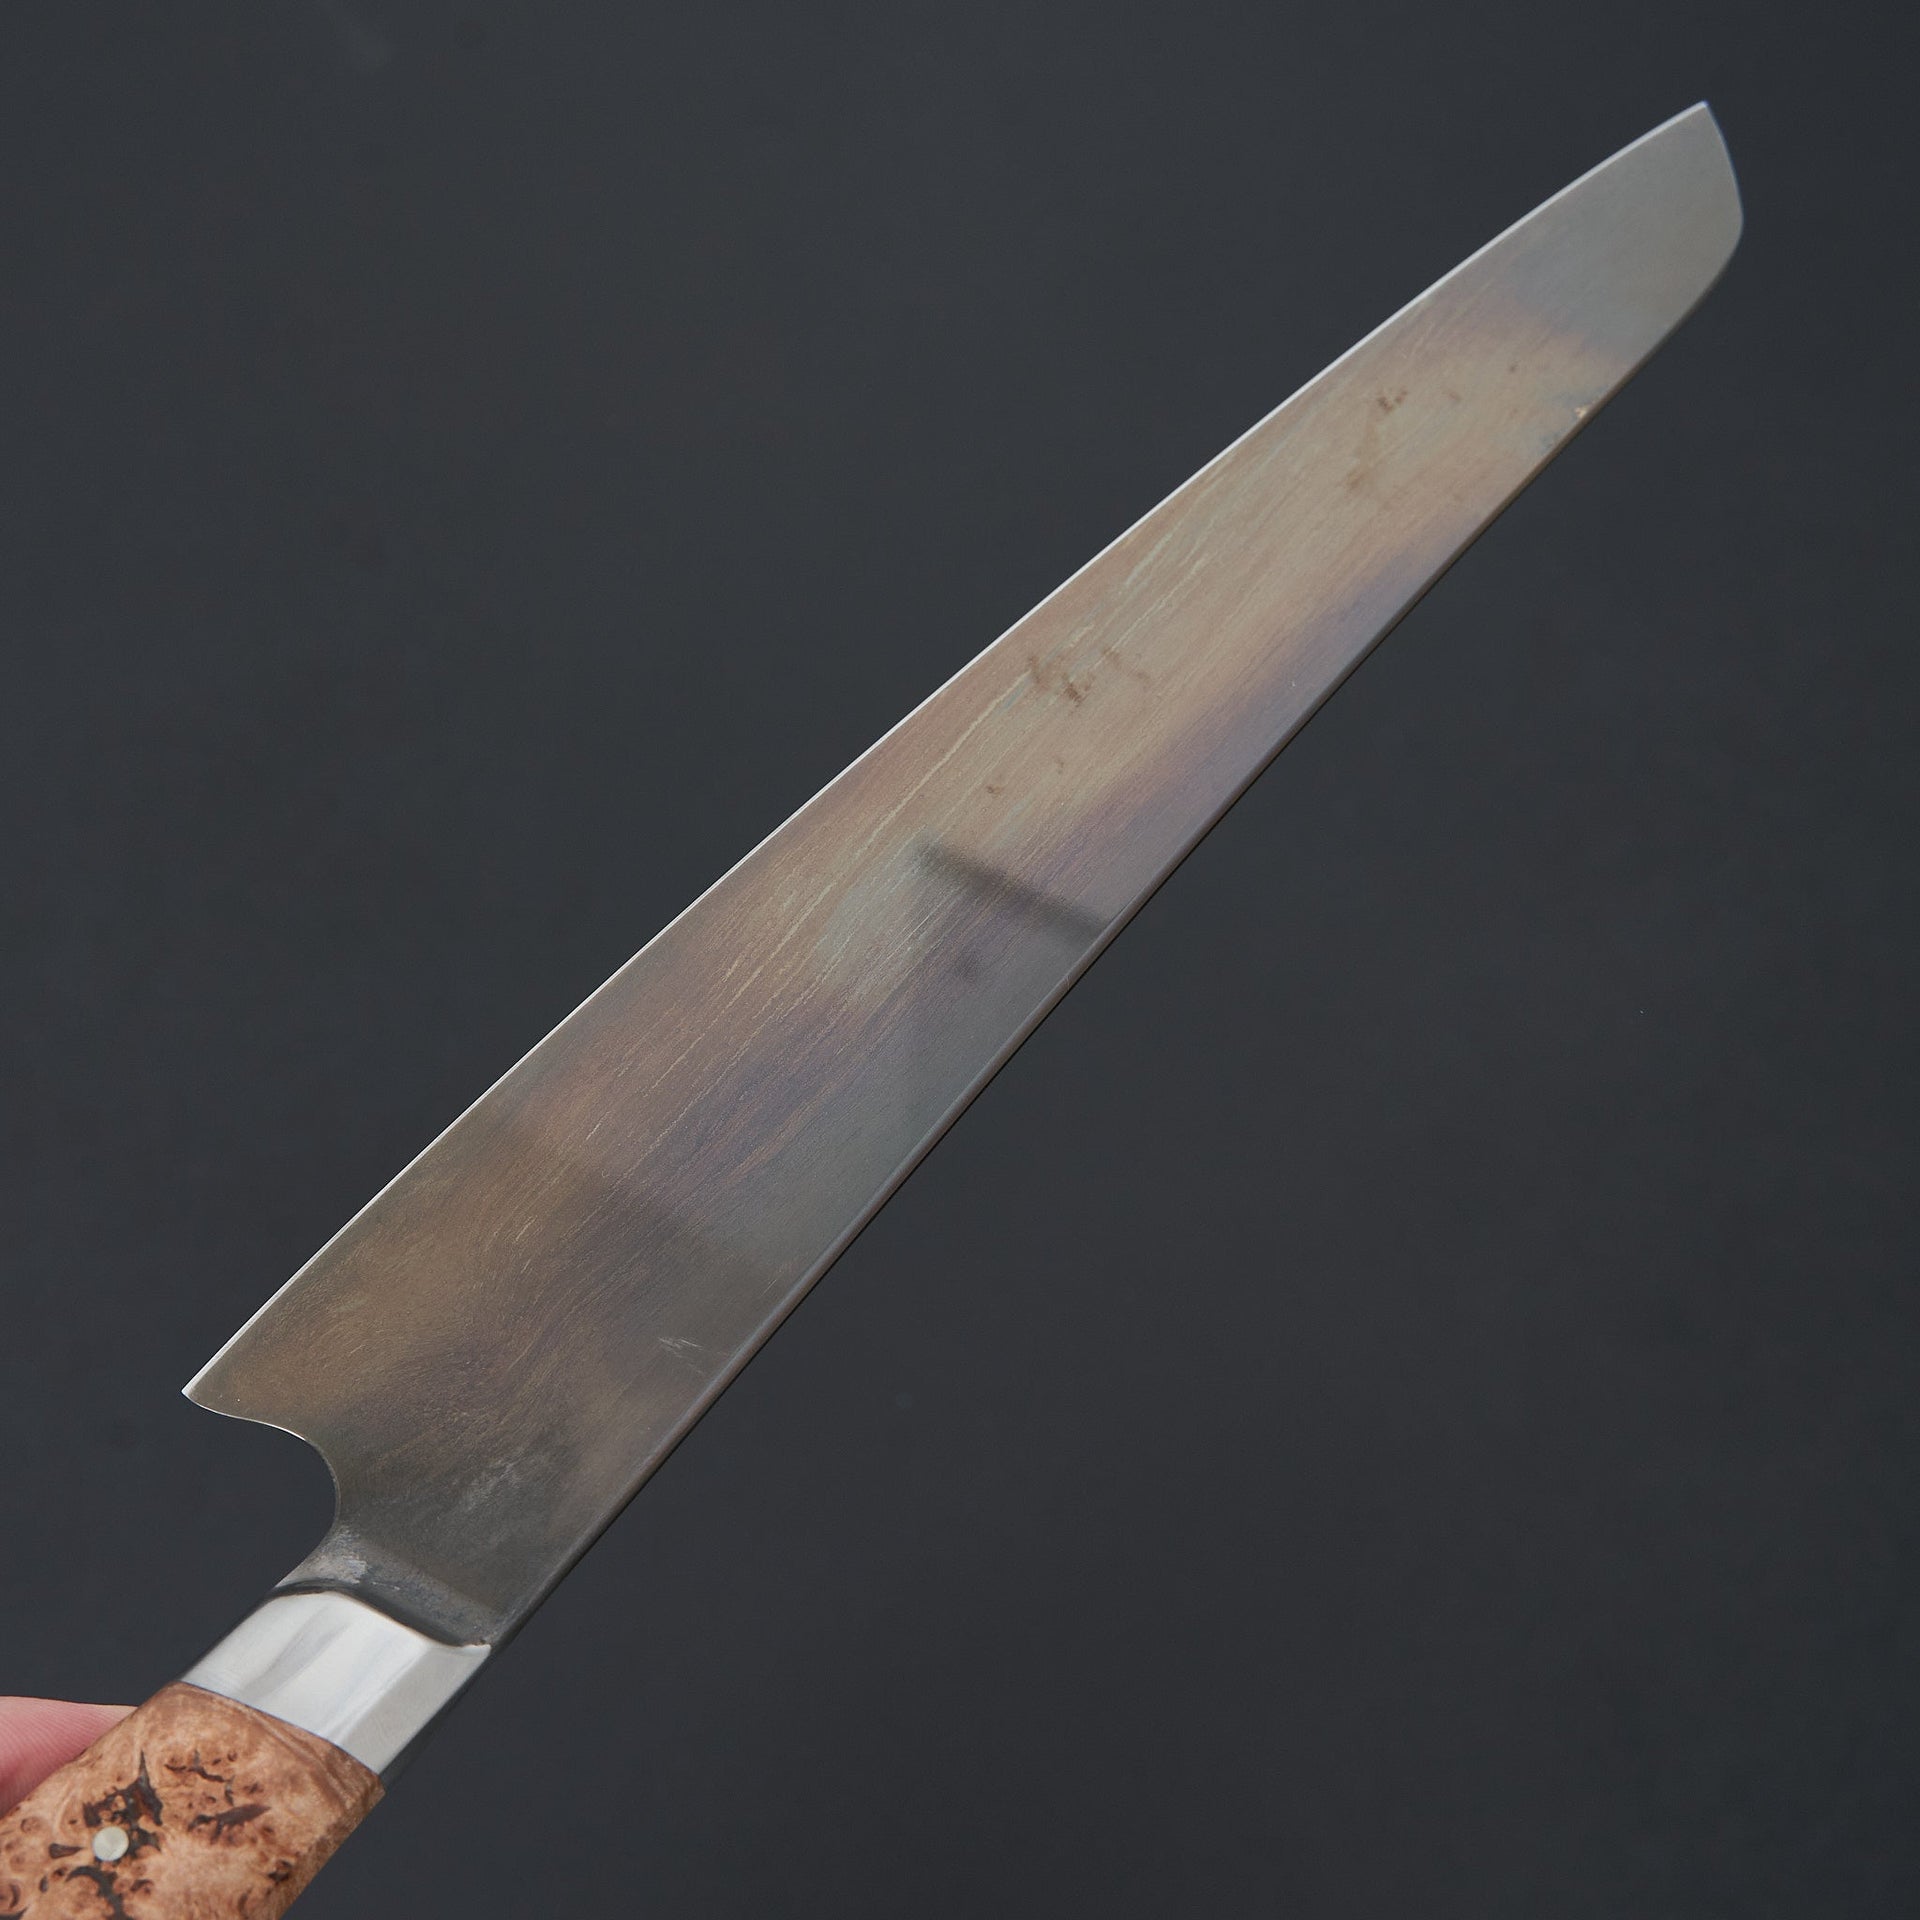 STEELPORT Knife Co. 10" Slicing Knife-Knife-STEELPORT Knife Co.-Carbon Knife Co